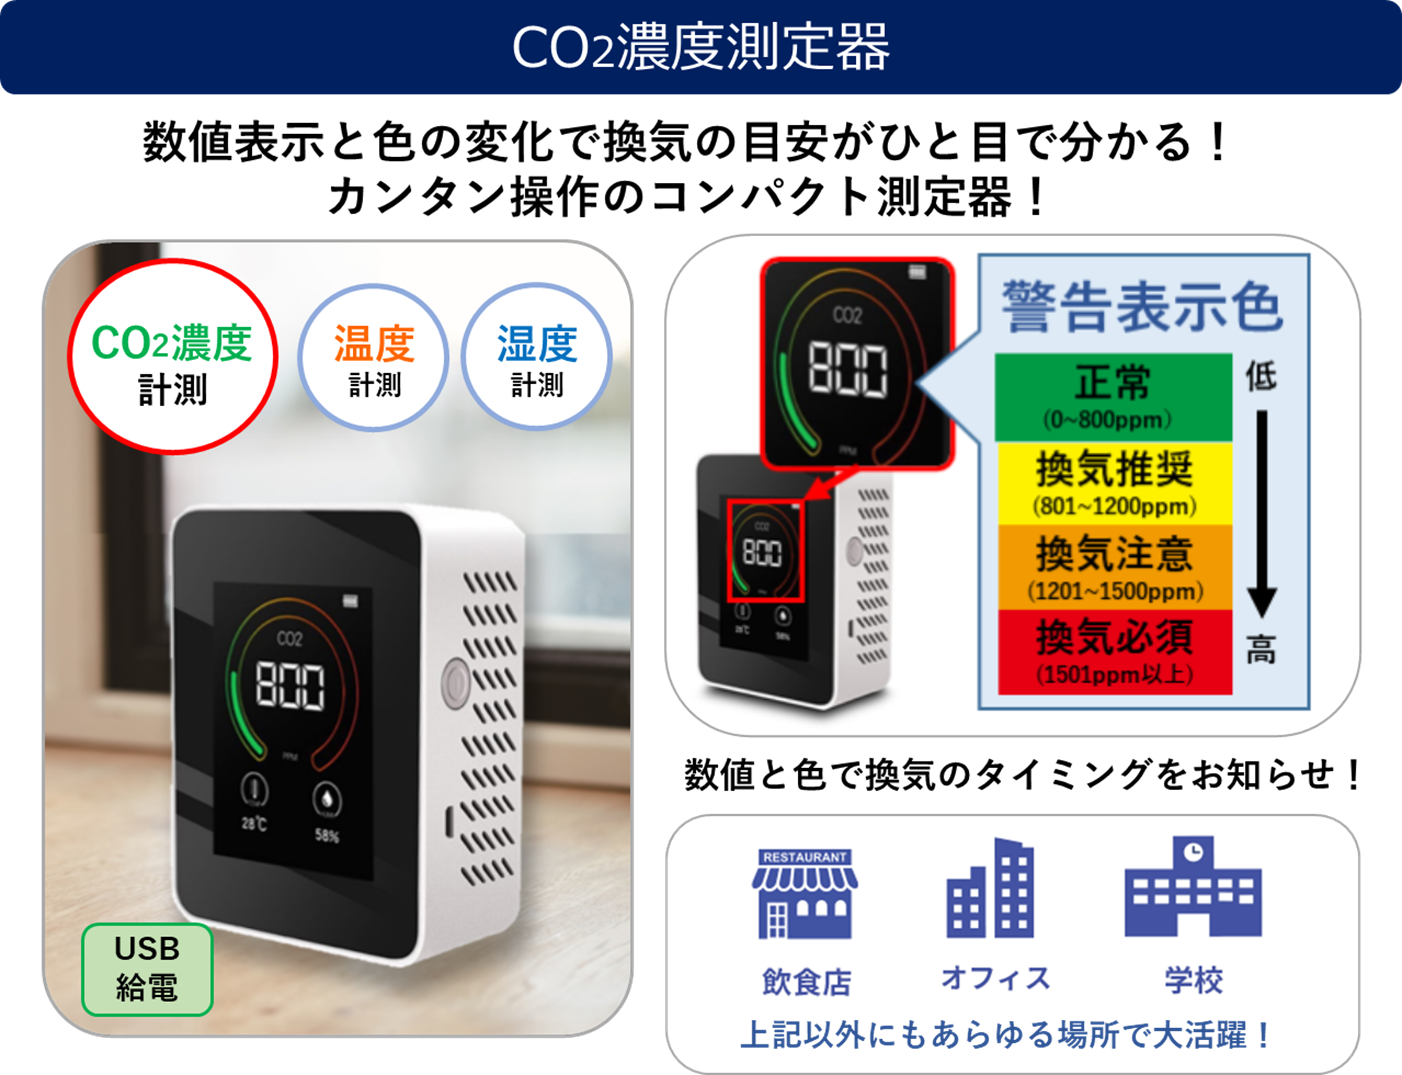 CO2濃度測定器」の緊急輸入及び販売開始に関するお知らせ｜株式会社 